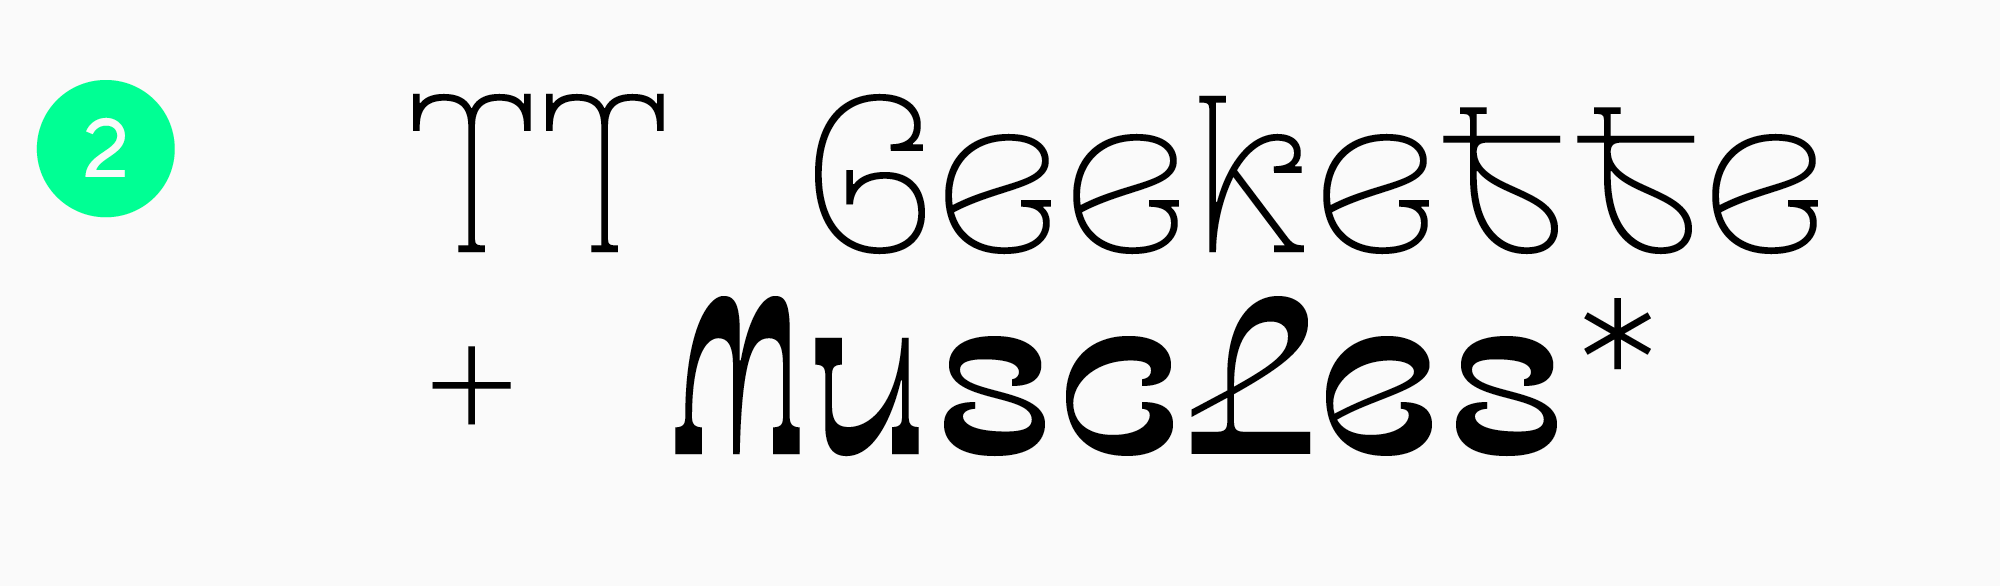 Fun font for video games TT Geekette